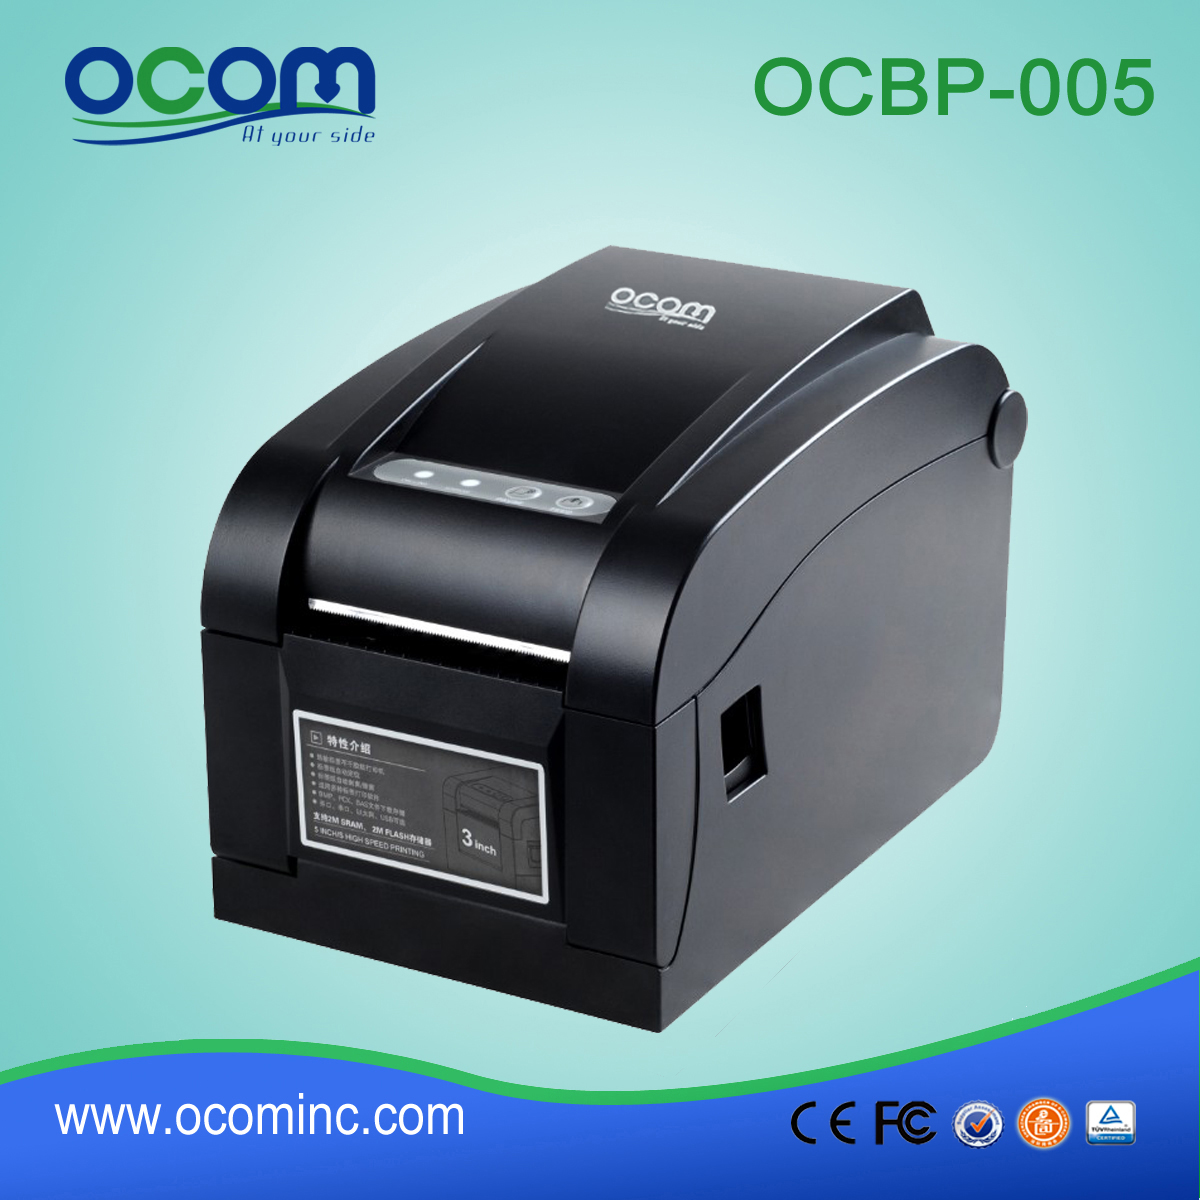 أفضل سعر USB LAN منافذ الطابعة الباركود تسمية المسلسل OCBP-005